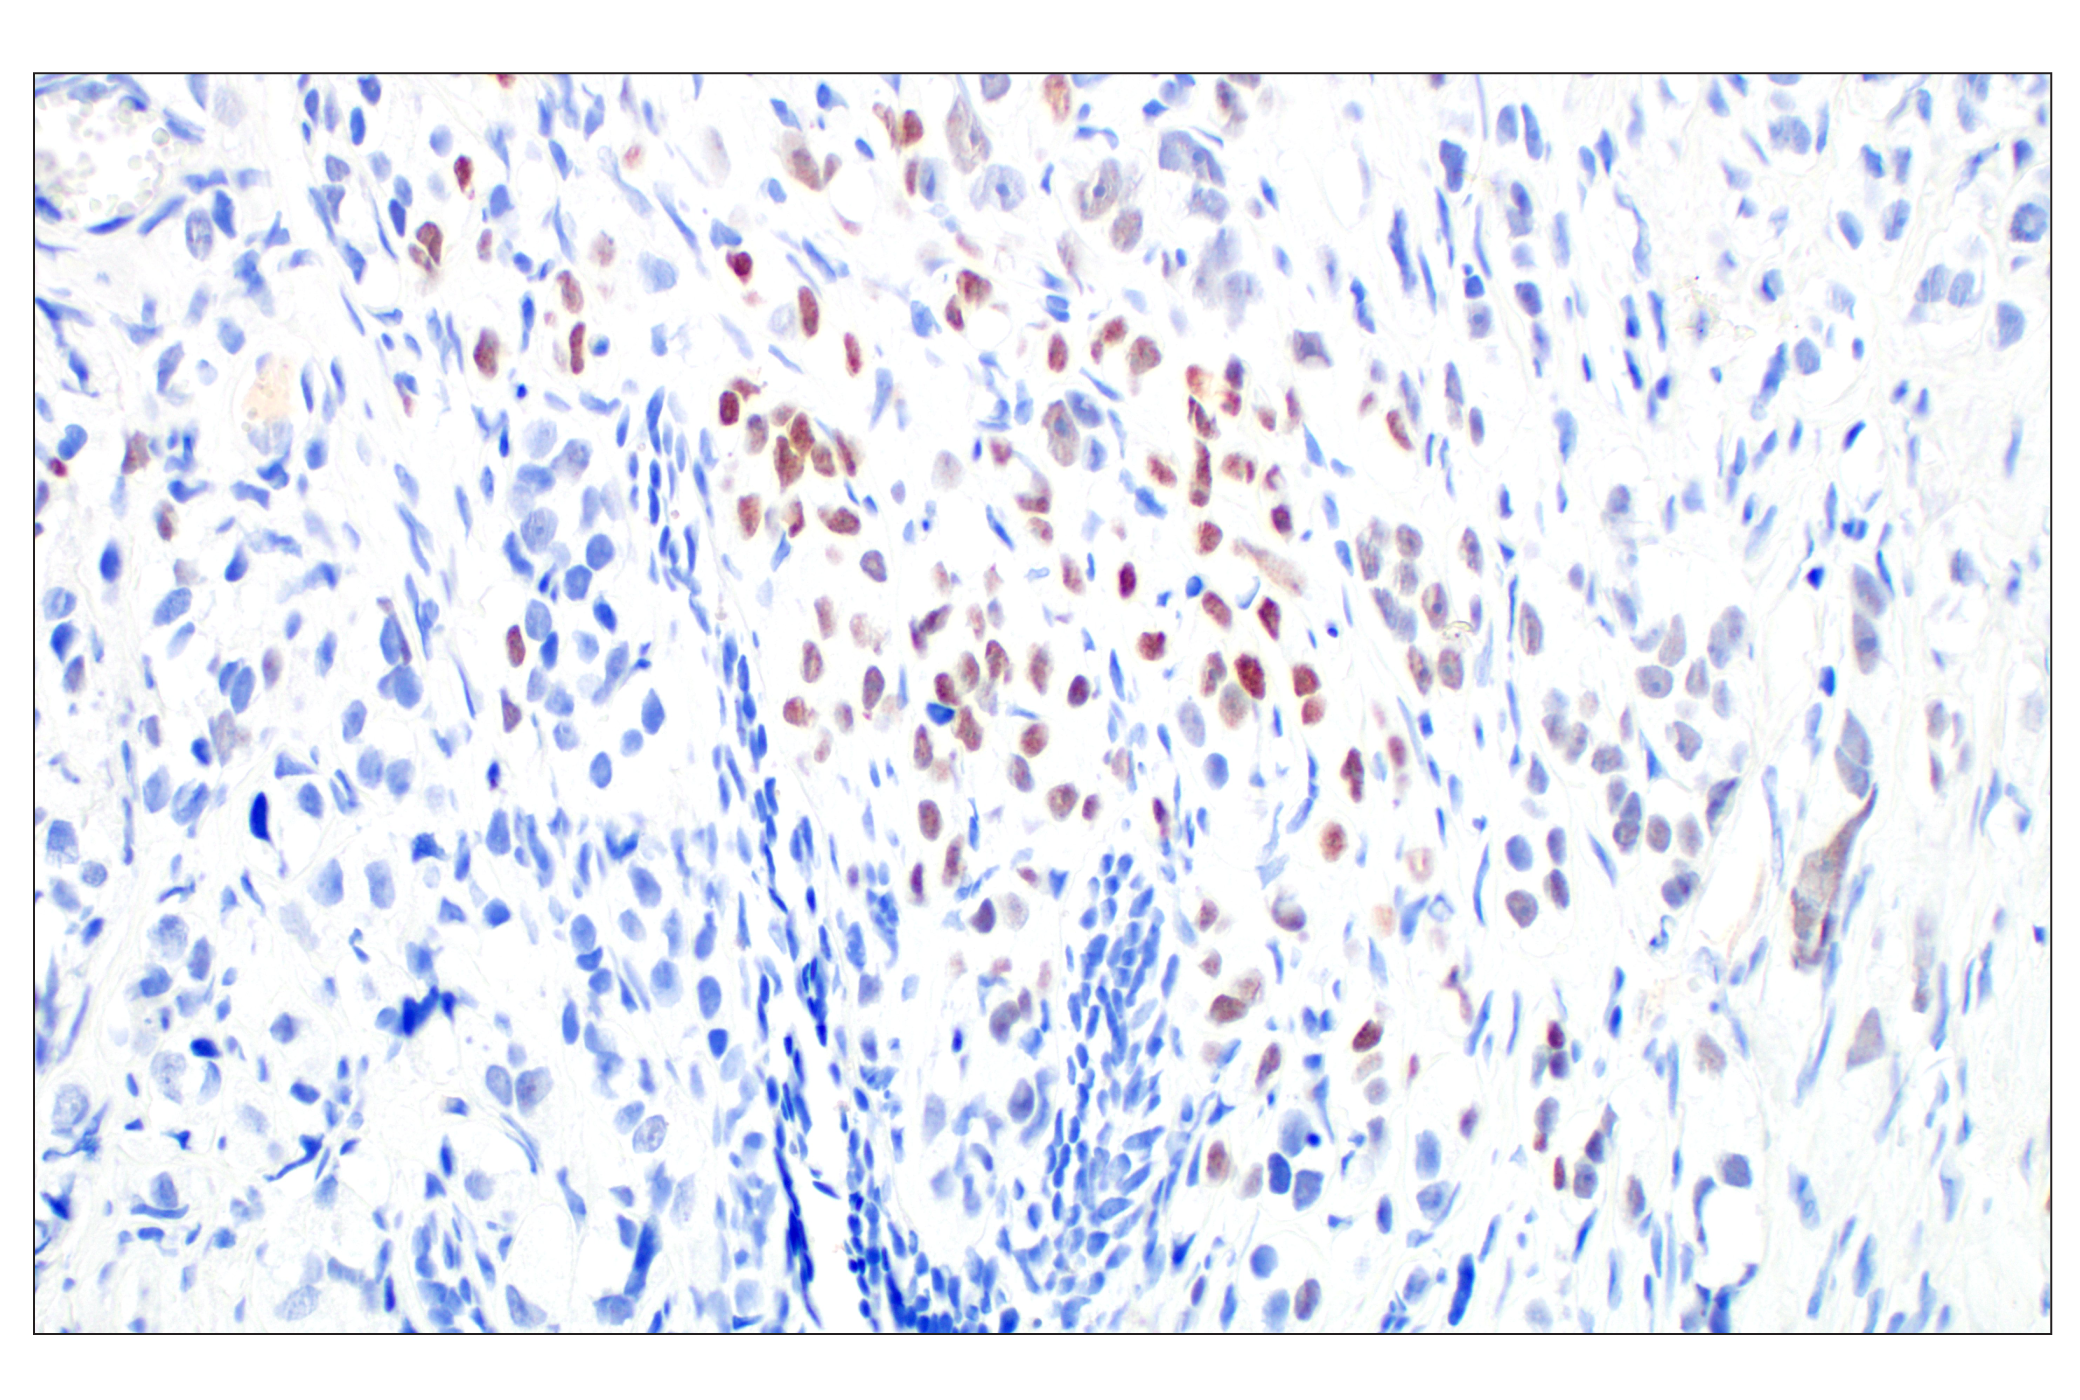  Image 17: UV Induced DNA Damage Response Antibody Sampler Kit